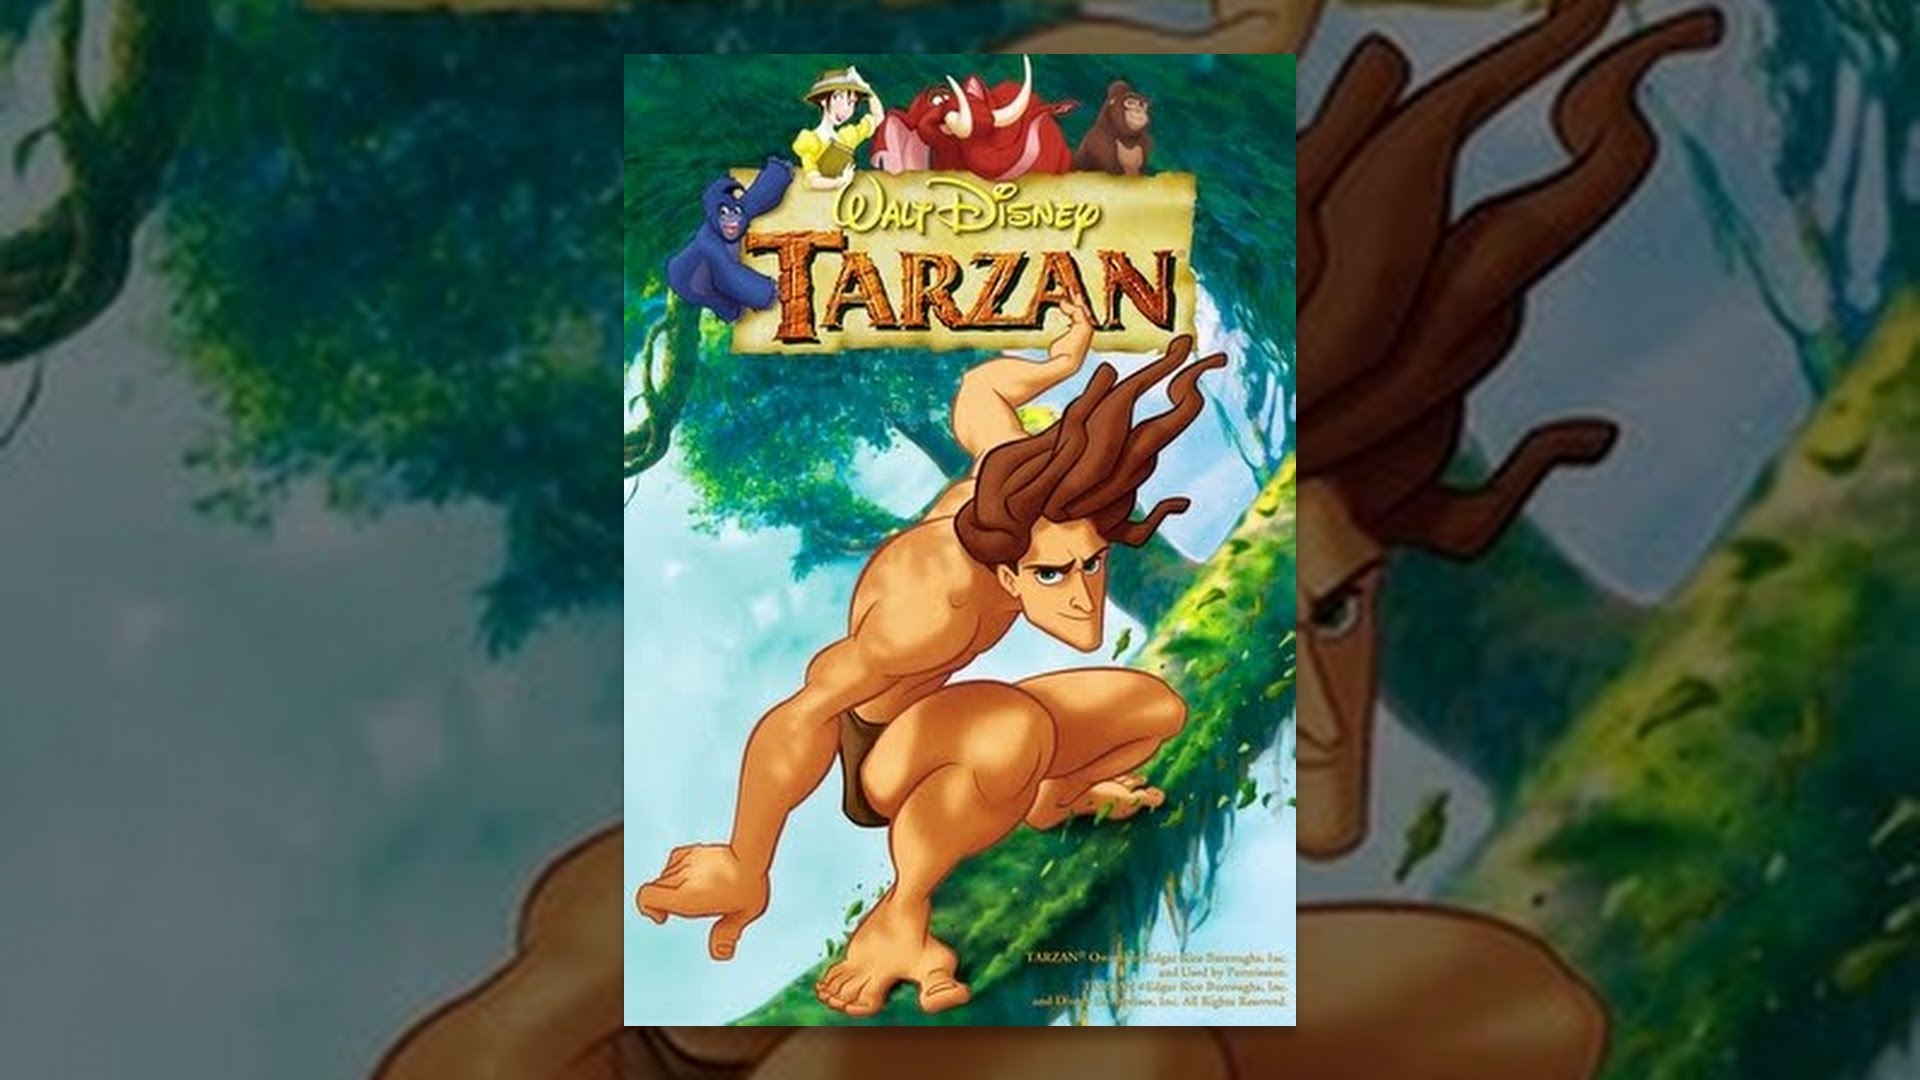 dimple rivera recommends Tarzan Full Movie 1999